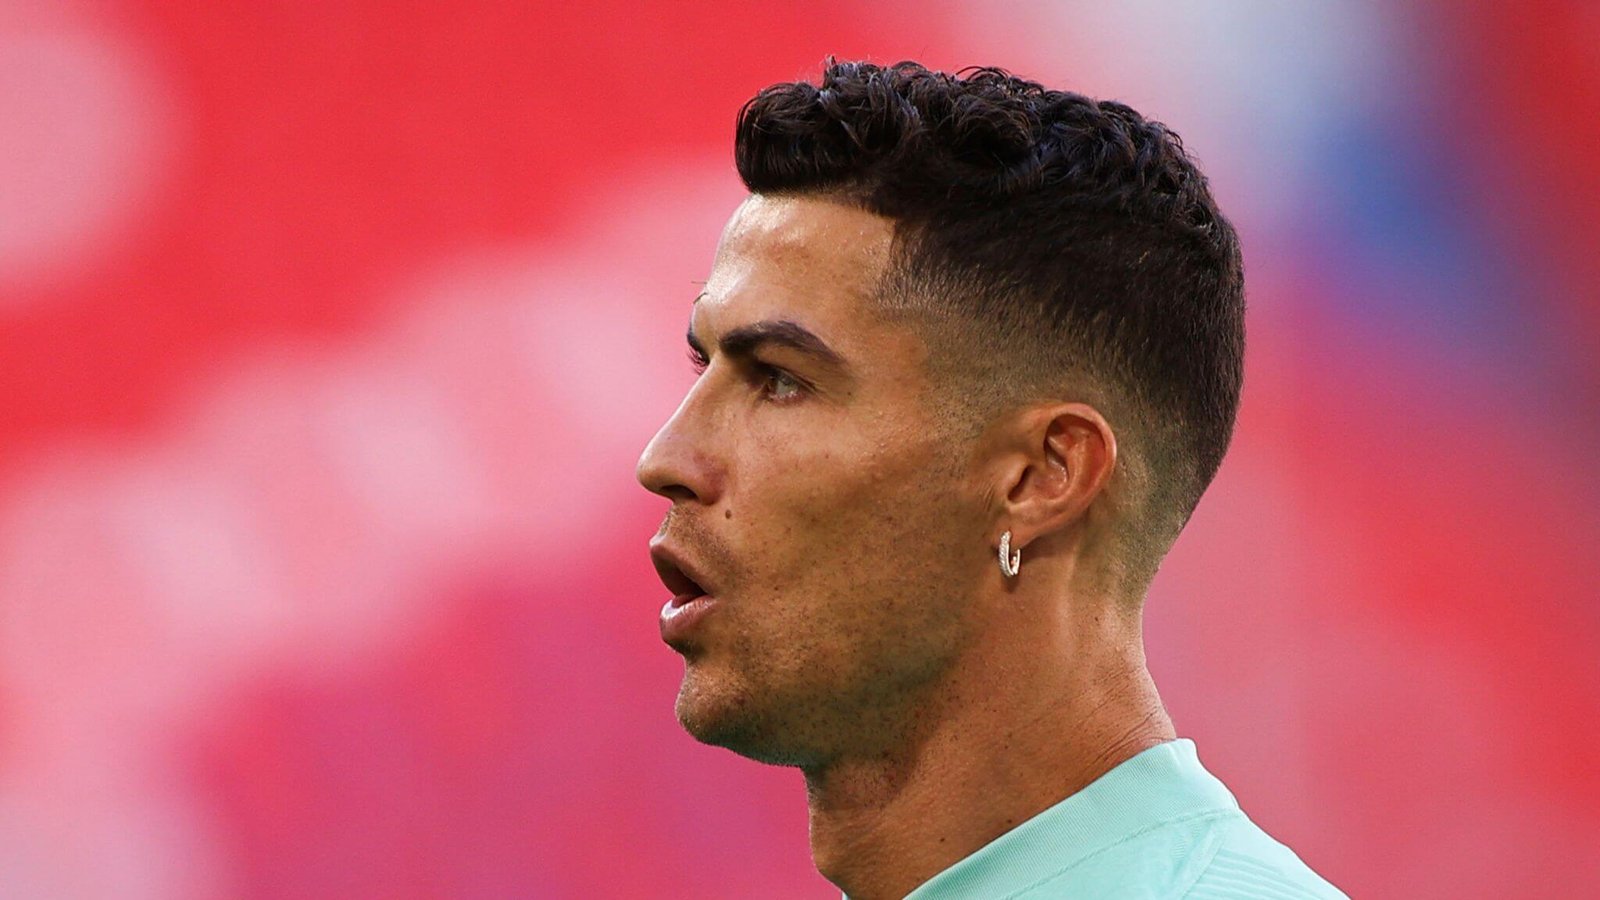 PICS Cristiano Ronaldos New Haircut See His Sexy Shaved Look At Euro  2016  Hollywood Life